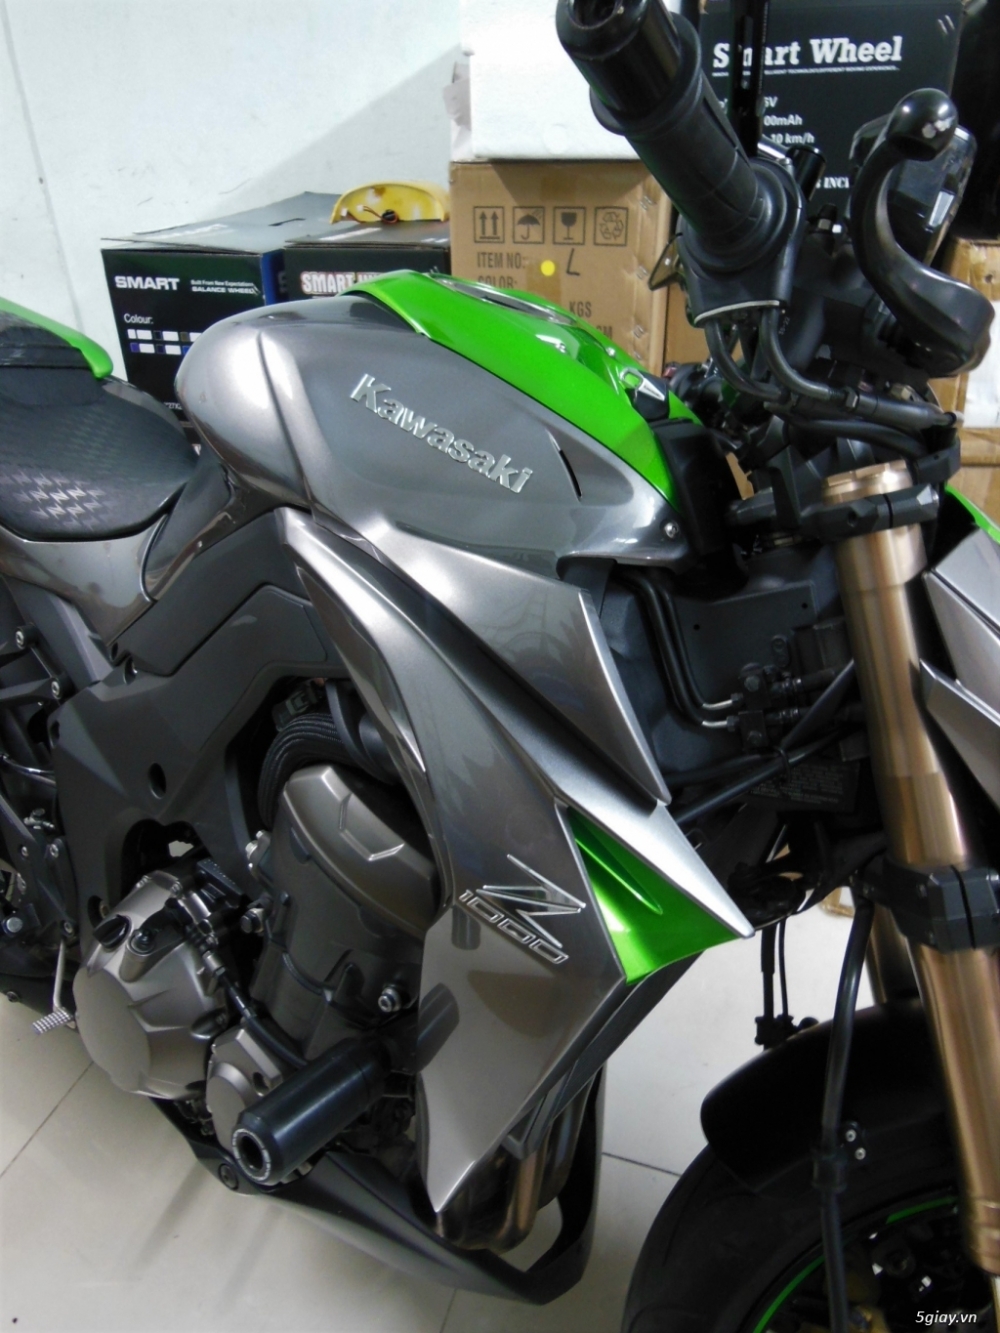 Kawasaki z1000 ODO 1700Km - 8